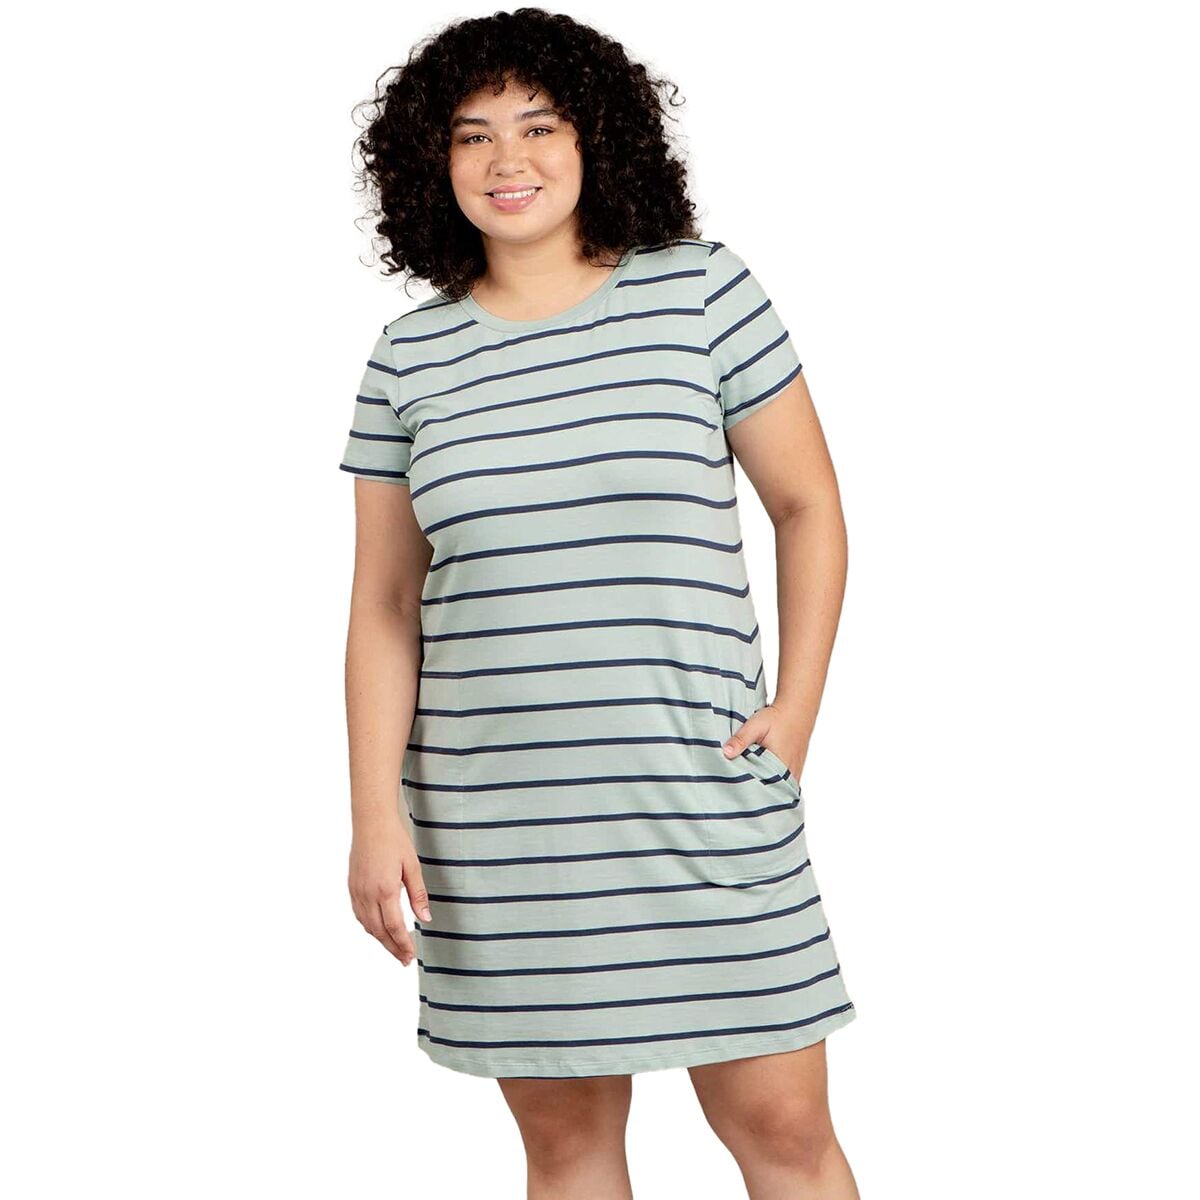 Windmere II Short-Sleeve Dress - Women